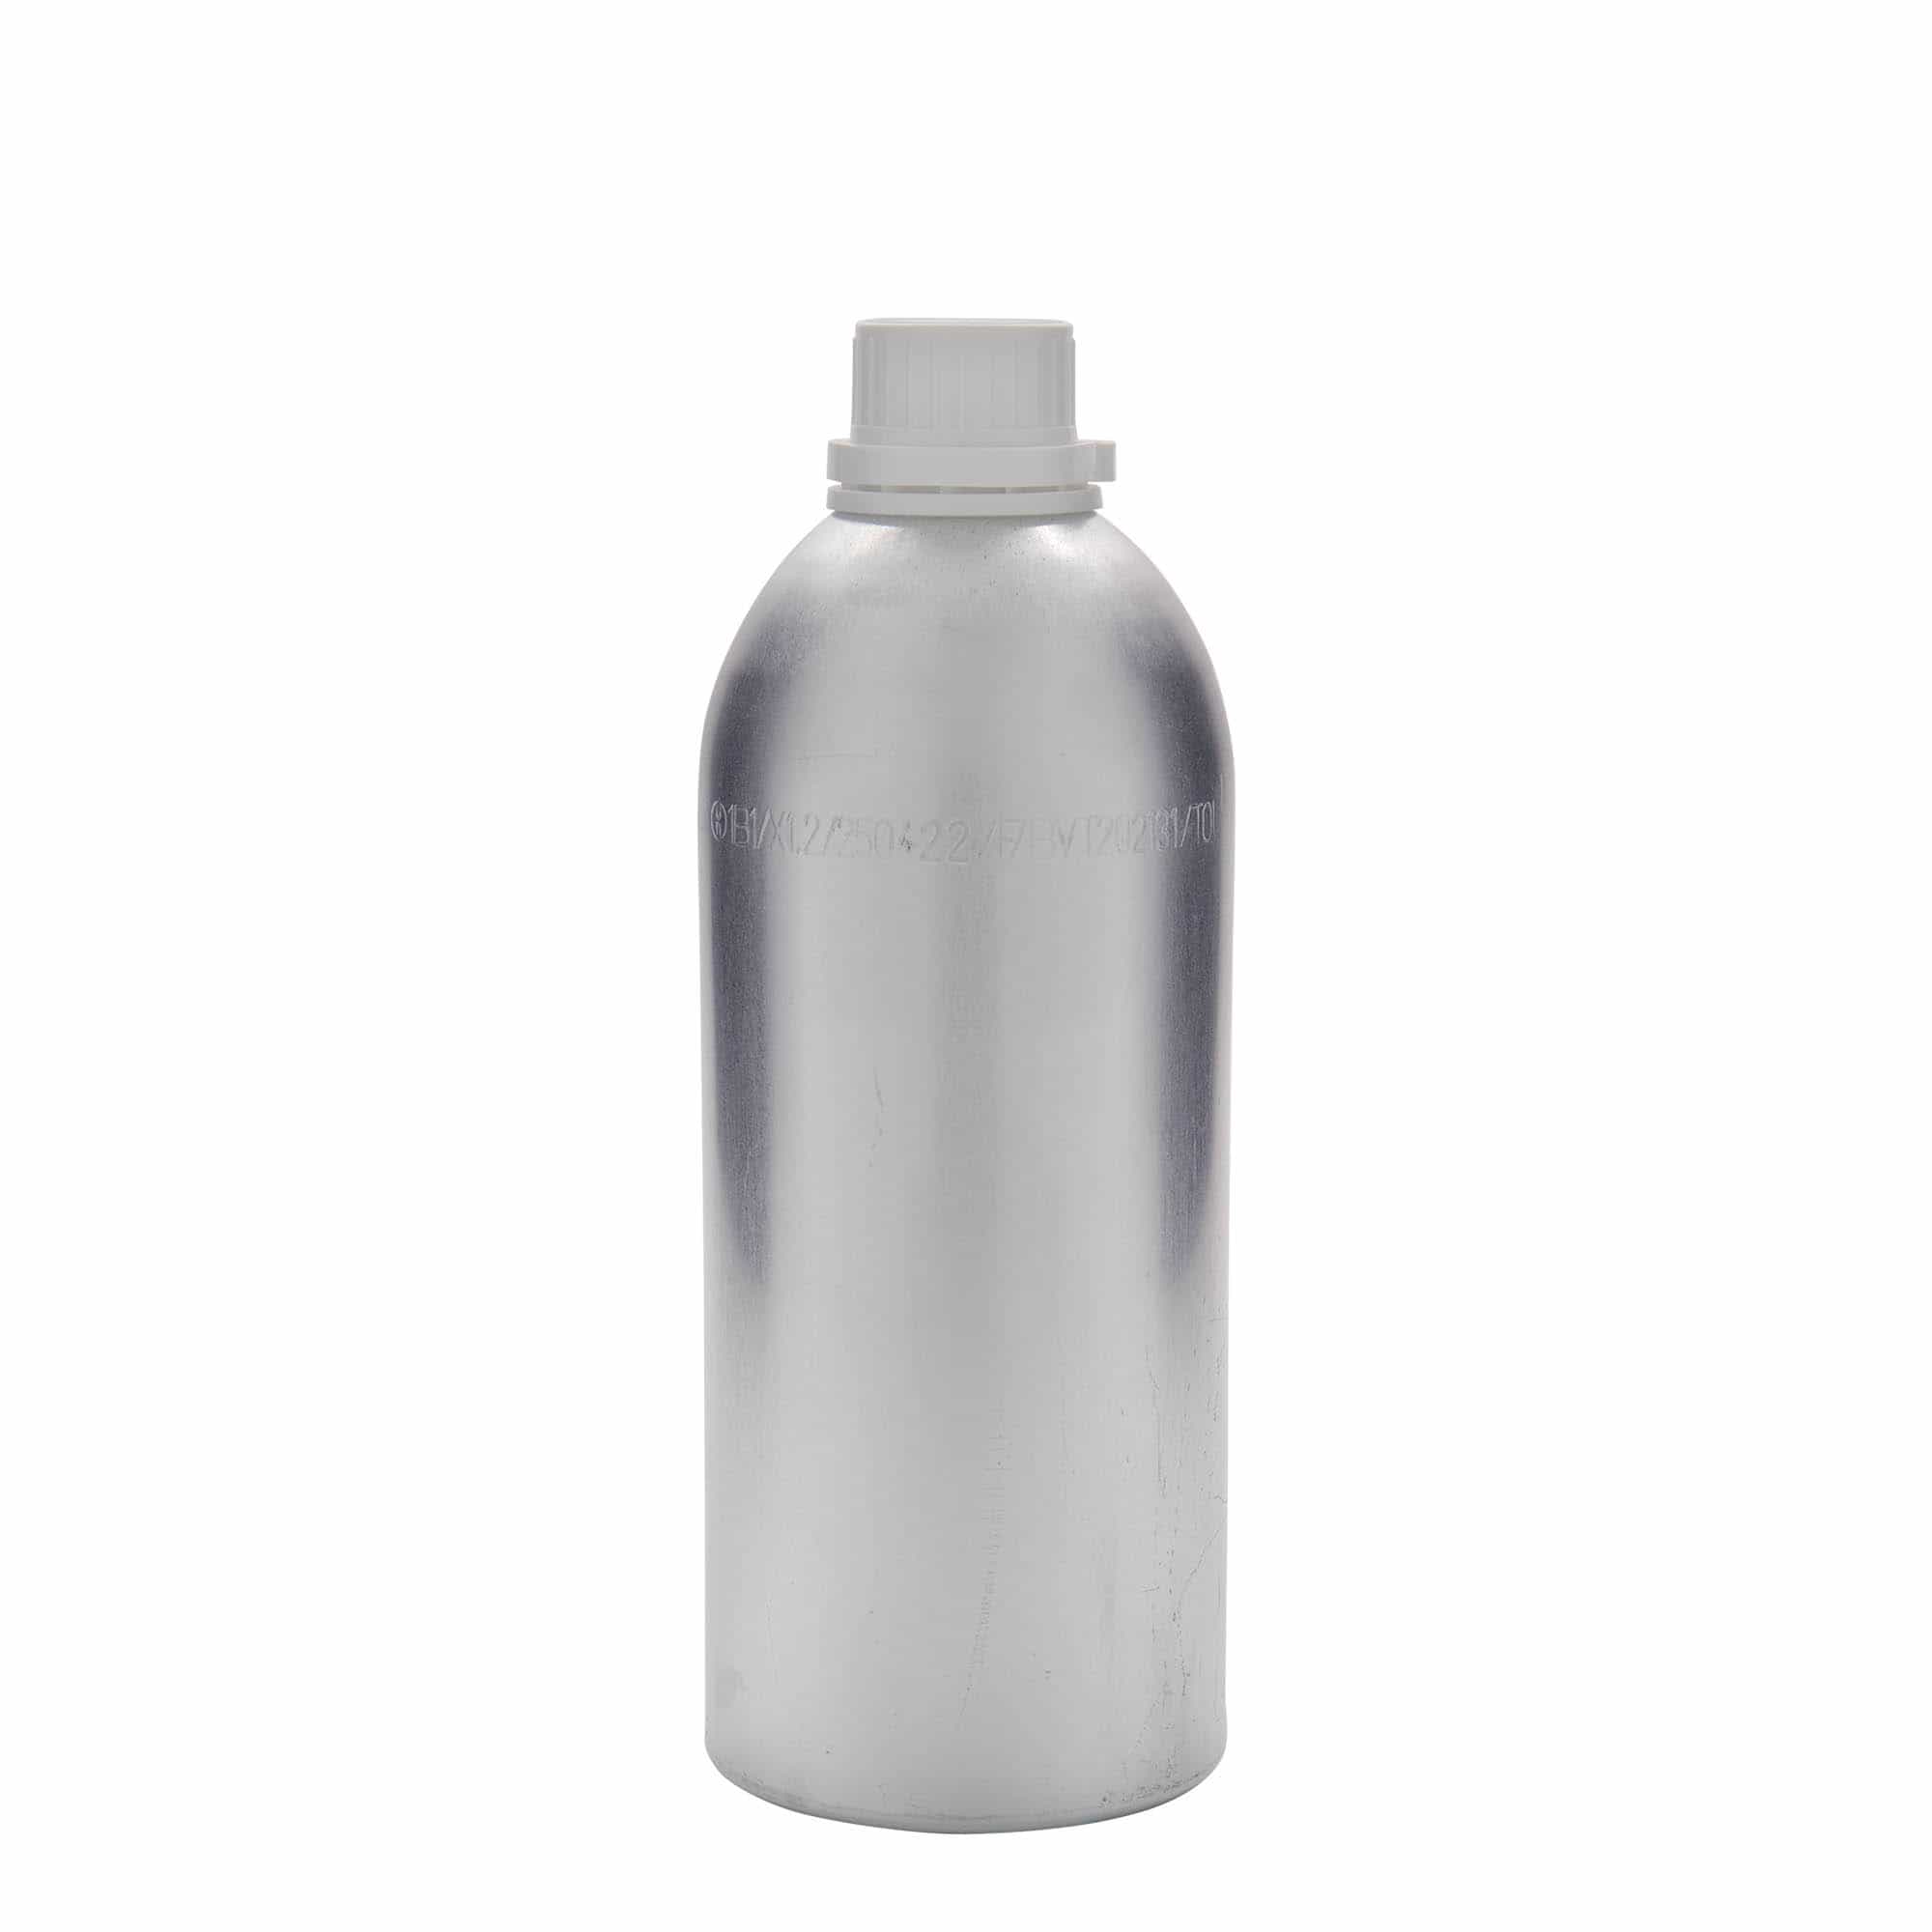 Hliníková lahev 1100 ml, kov, stříbrná, ústí: DIN 32